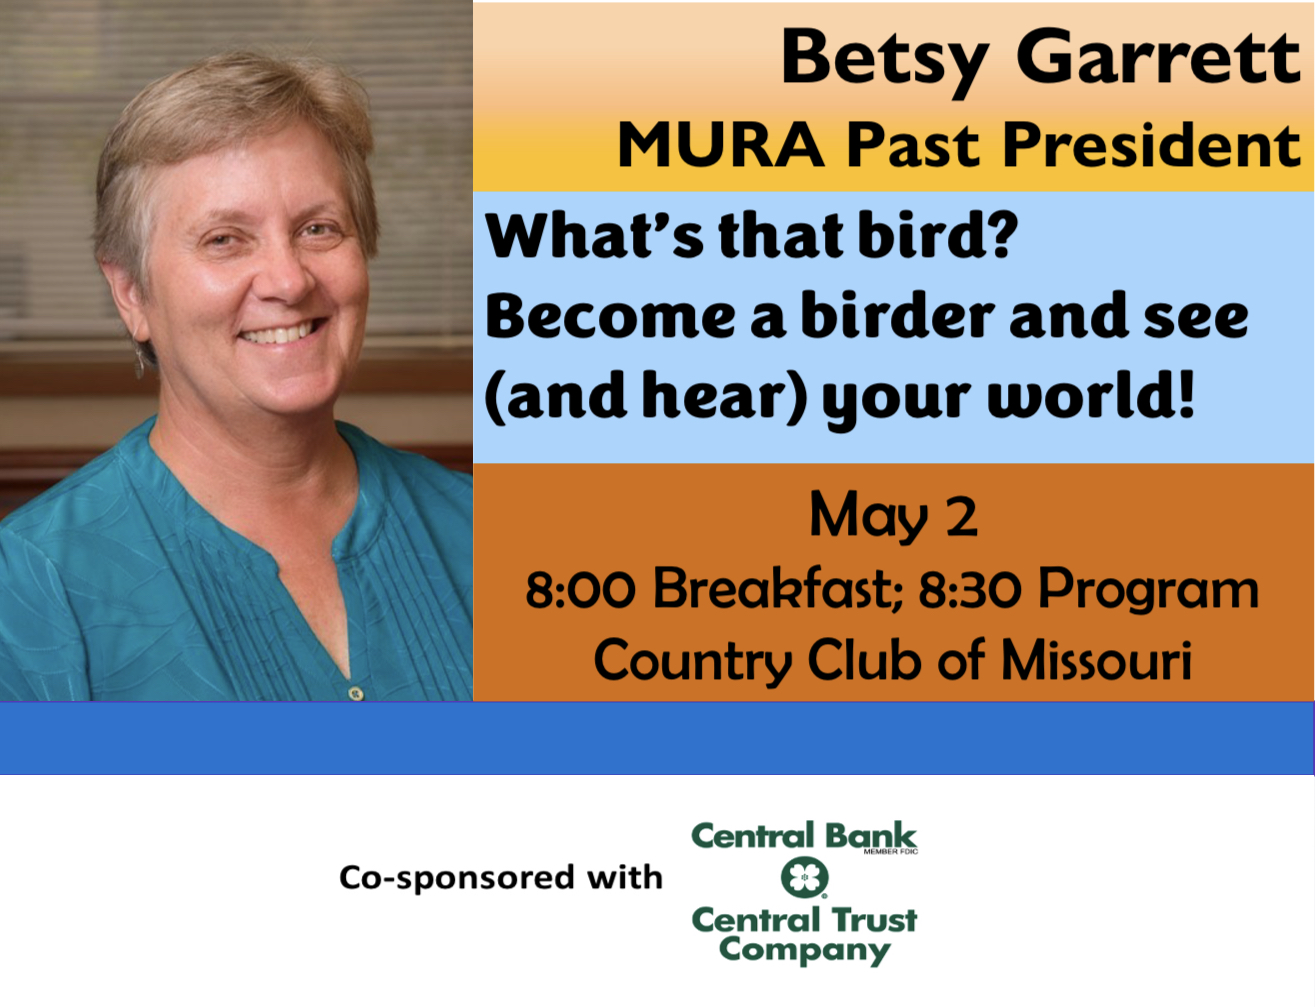 MURA Breakfast with Betsy Garrett. What’s that bird?